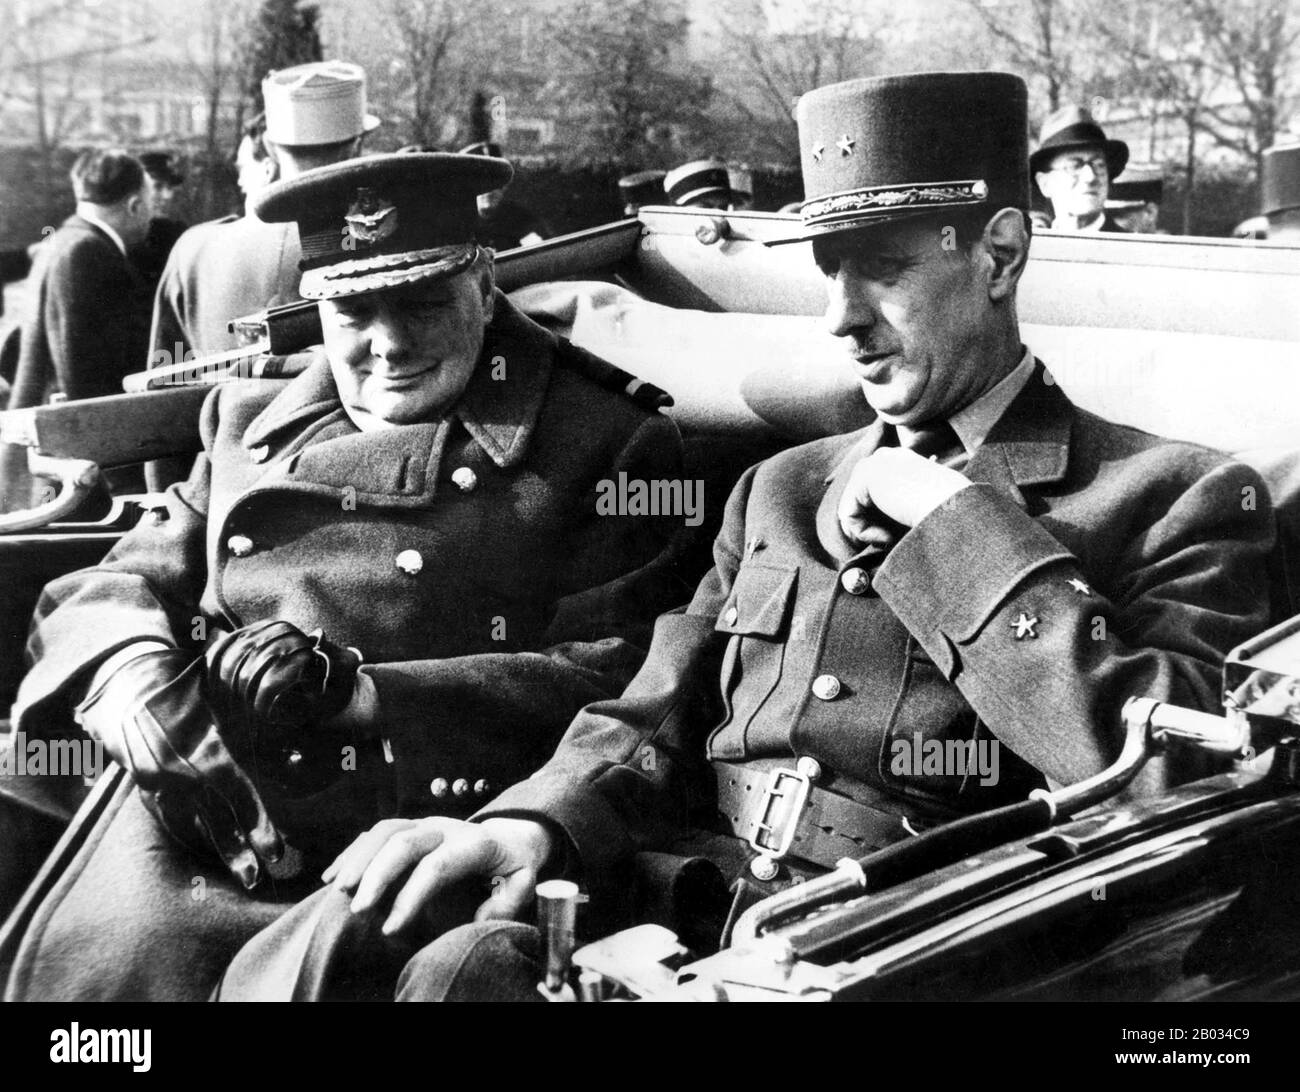 Charles Andre Joseph Marie de Gaulle (22. November 1890 - 9. November 1970) war ein französischer Militärgeneral und Staatsmann. Er war Führer des Freien Frankreich (1940-44) und Chef der Provisorischen Regierung der französischen Republik (1944-46). 1958 gründete er die Fünfte Republik und wurde zum 18. Französischen Staatspräsidenten gewählt, eine Position, die er bis zu seinem Rücktritt 1969 innehatte. Er war die dominierende Persönlichkeit Frankreichs während der Zeit des Kalten Krieges und seine Erinnerung beeinflusst weiterhin die französische Politik. Stockfoto